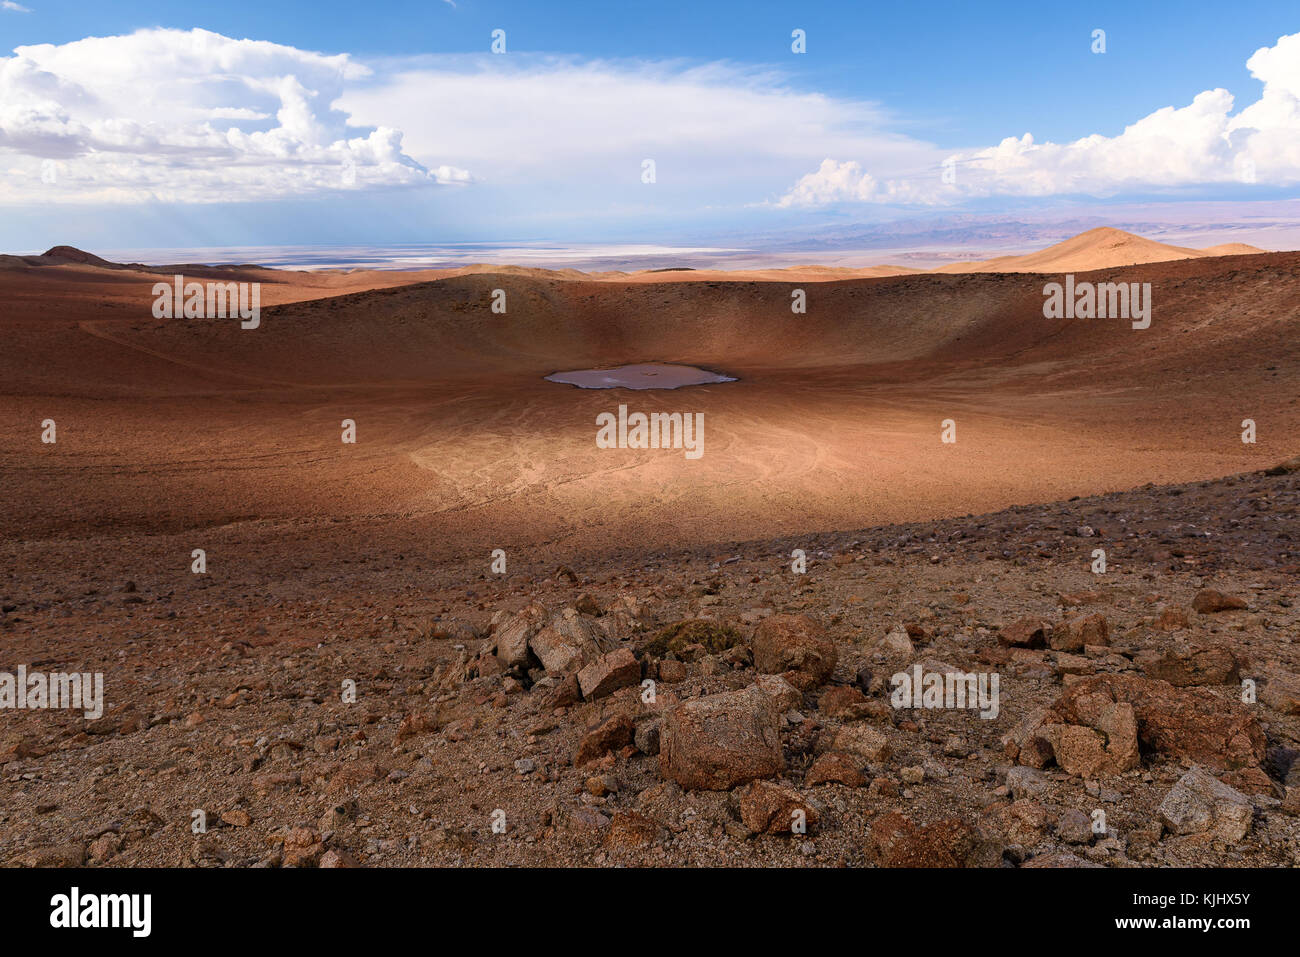 Monturaqui crater in the Atacama Desert, Chile Stock Photo